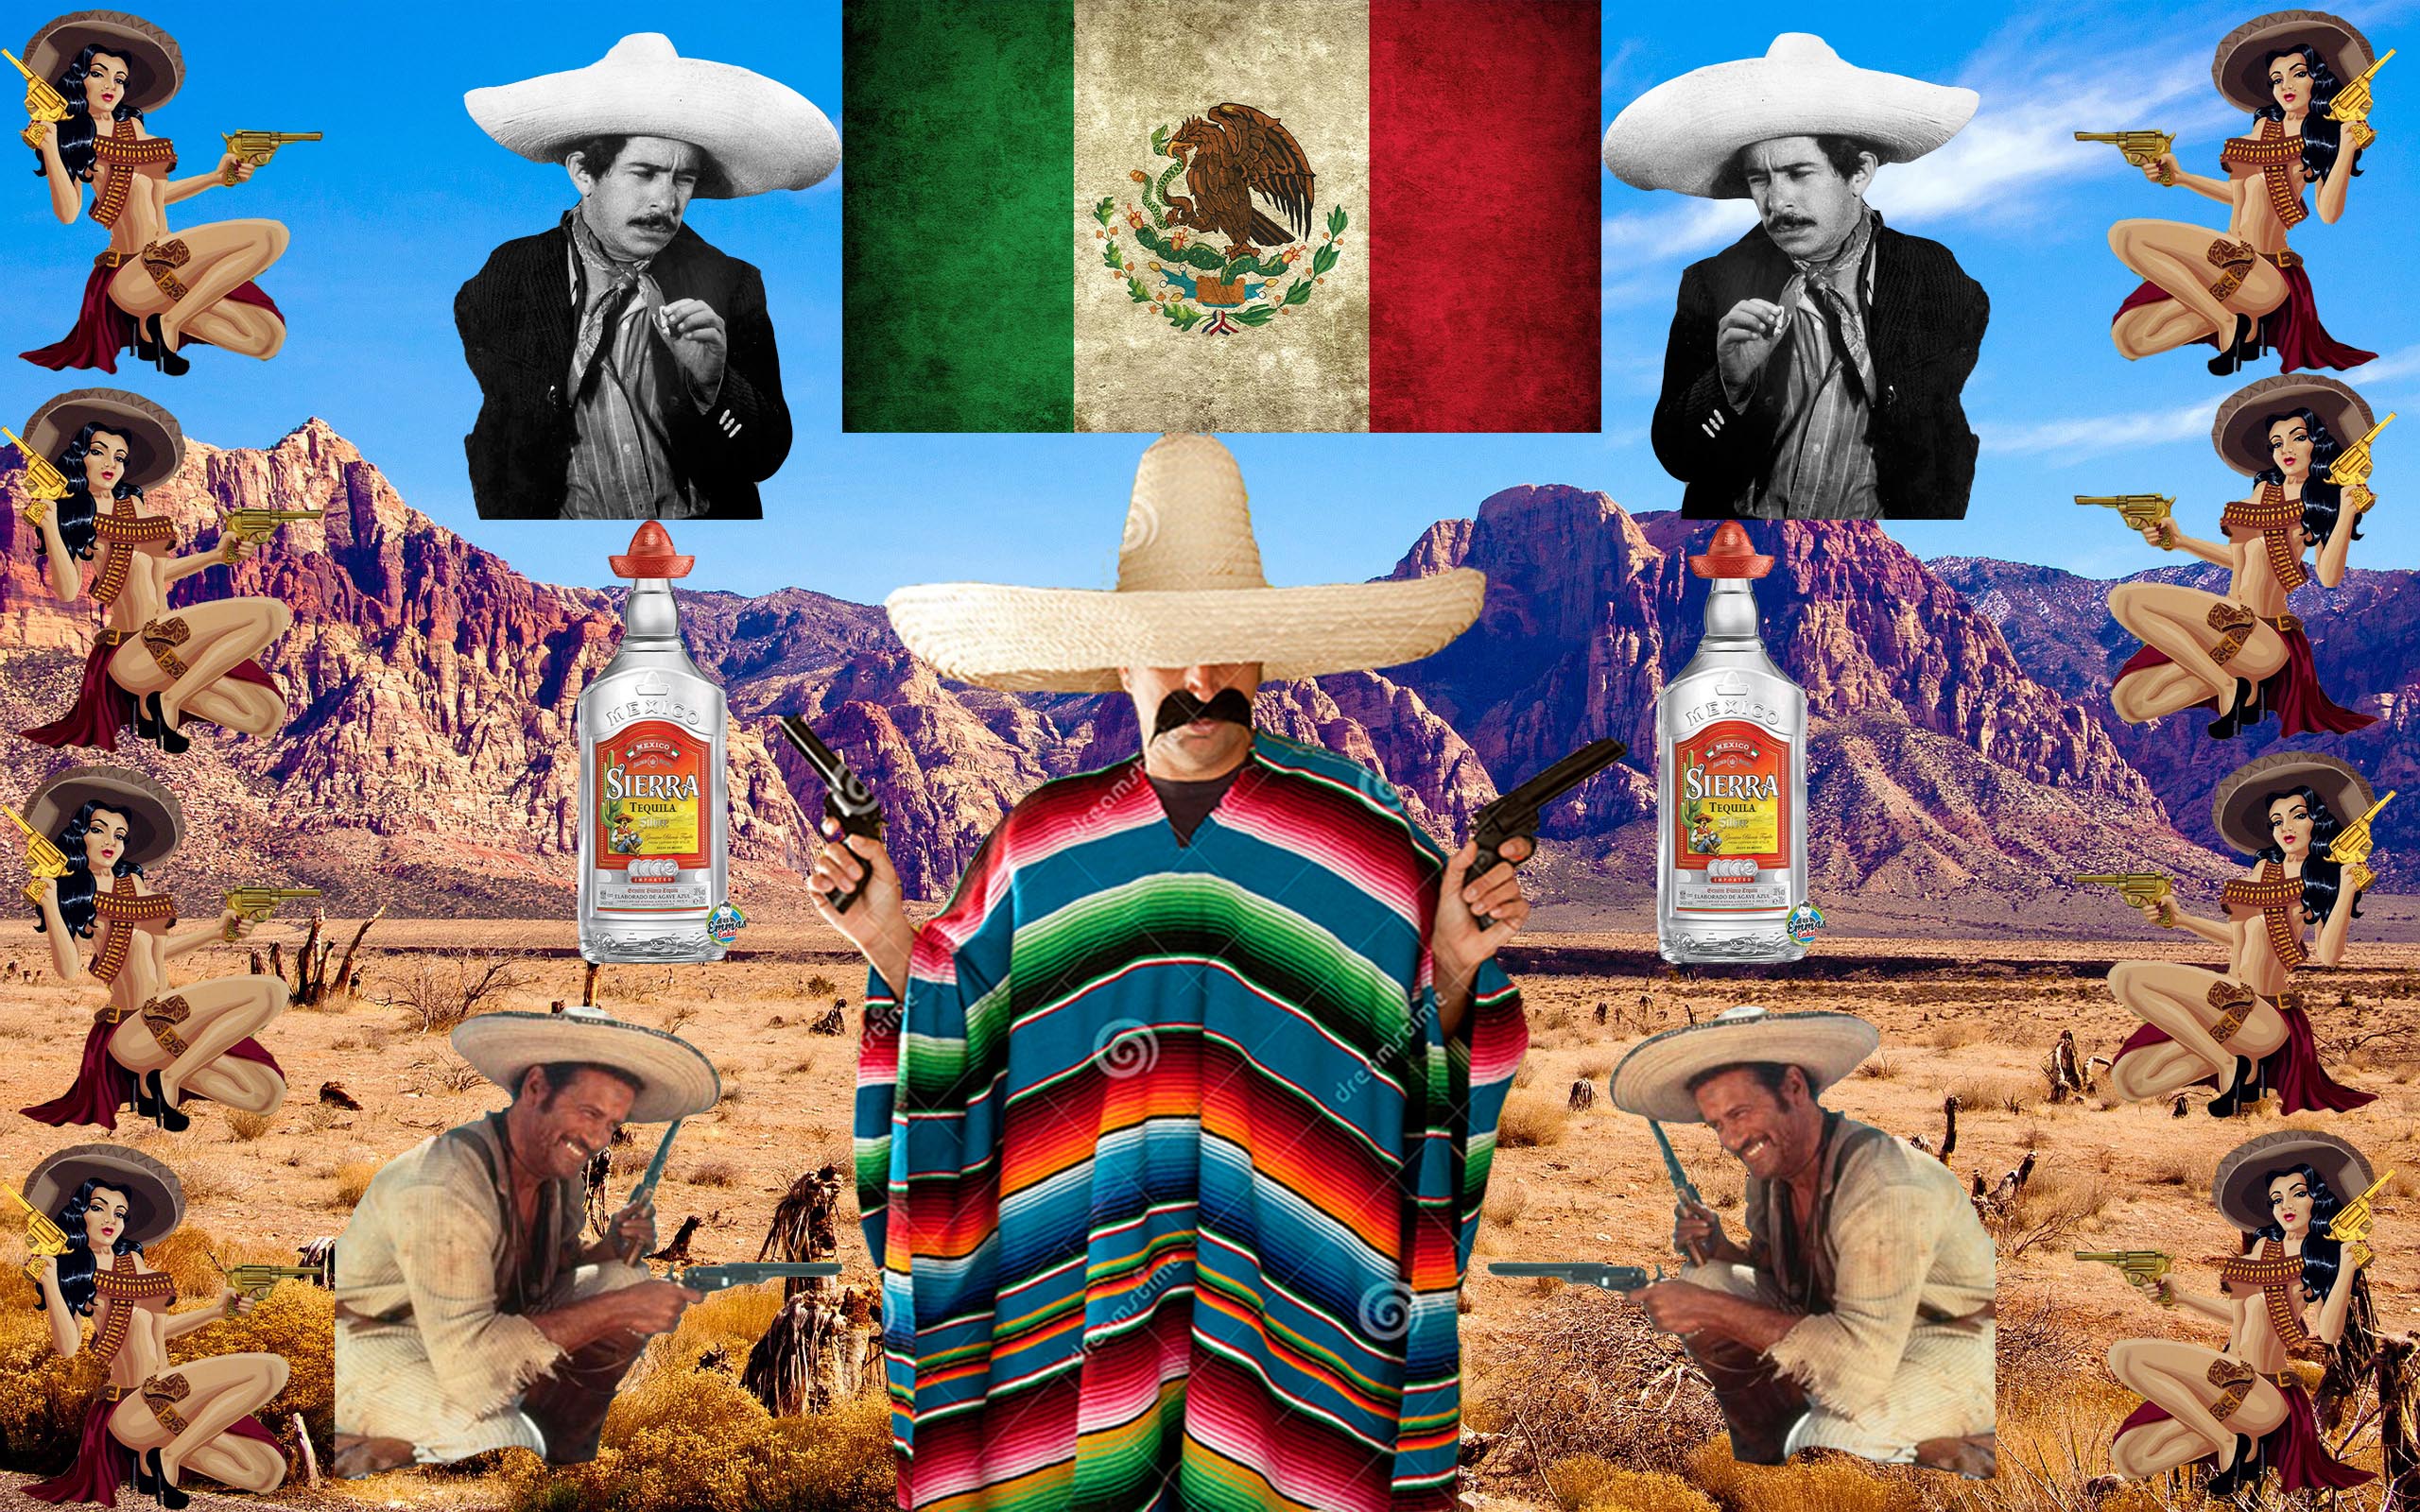 The Mexican pistolero